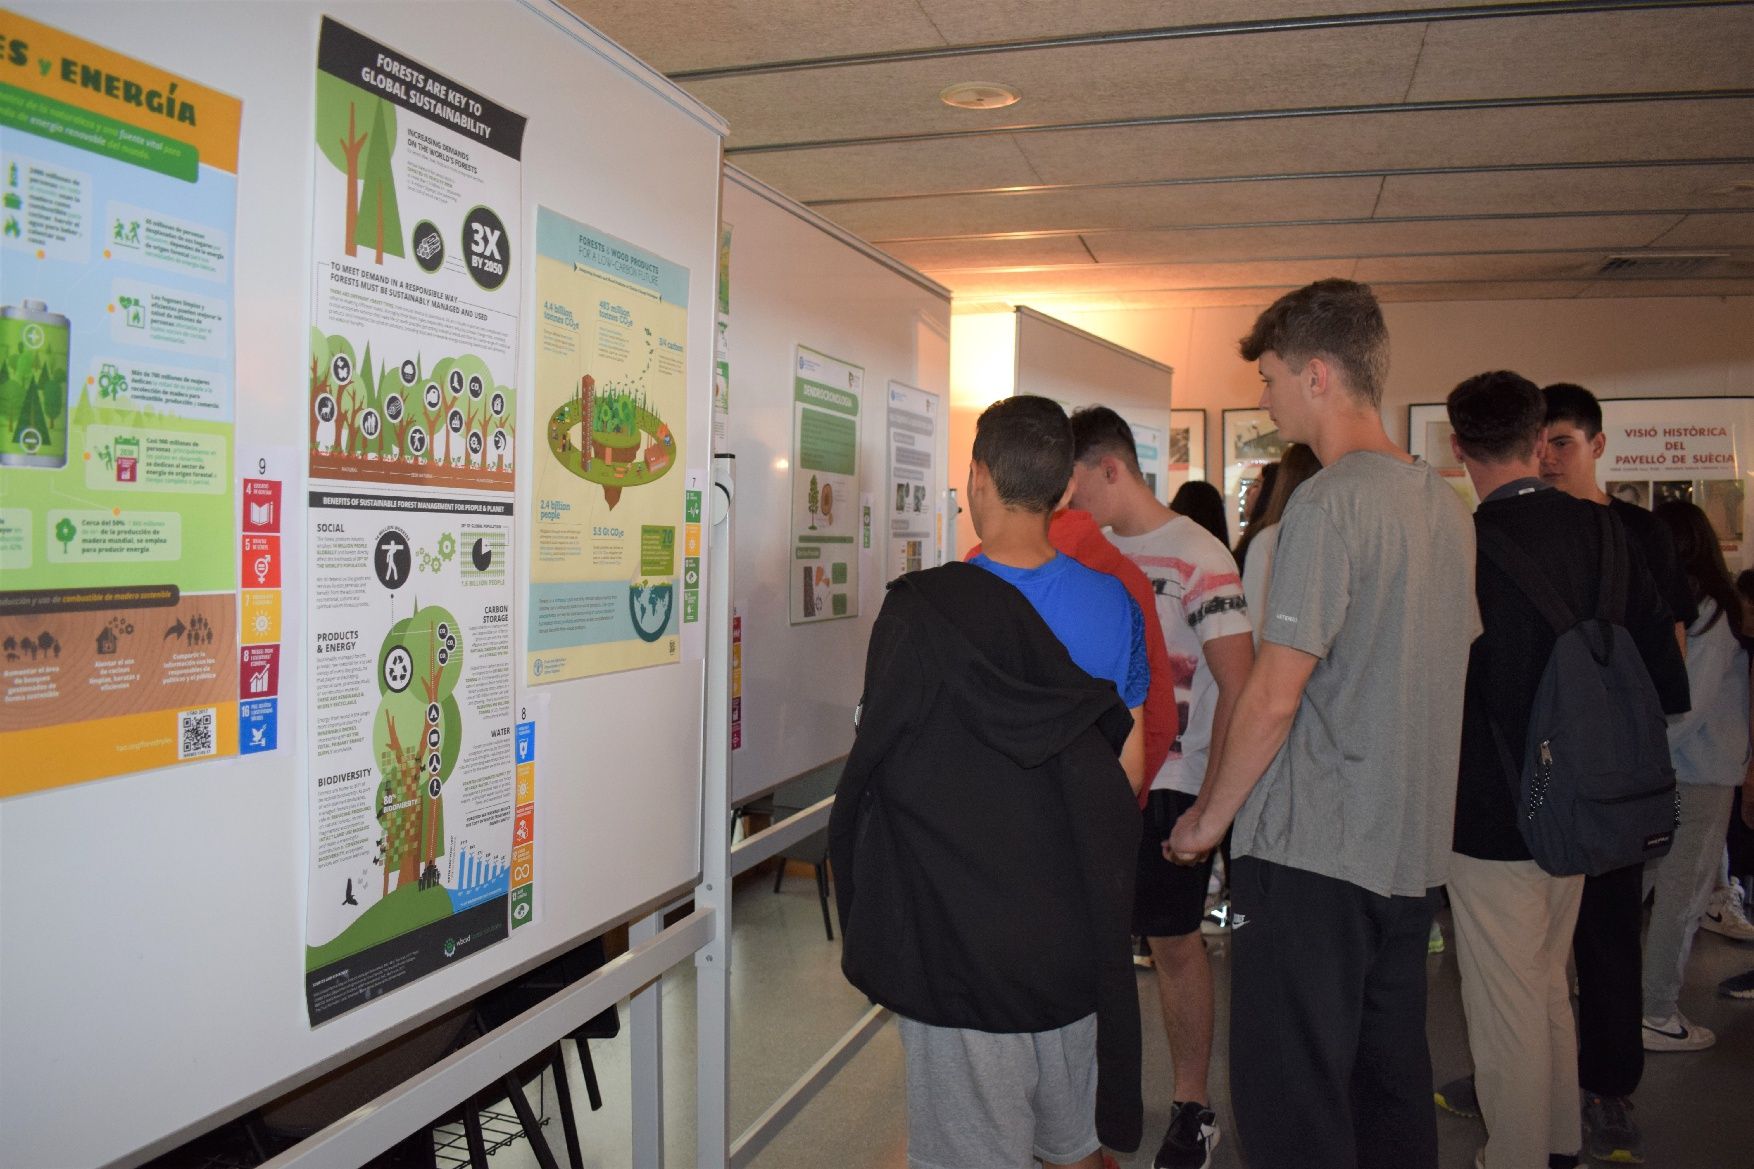 Els estudiants descobreixen projectes científics a la Fira del Coneixement de Berga